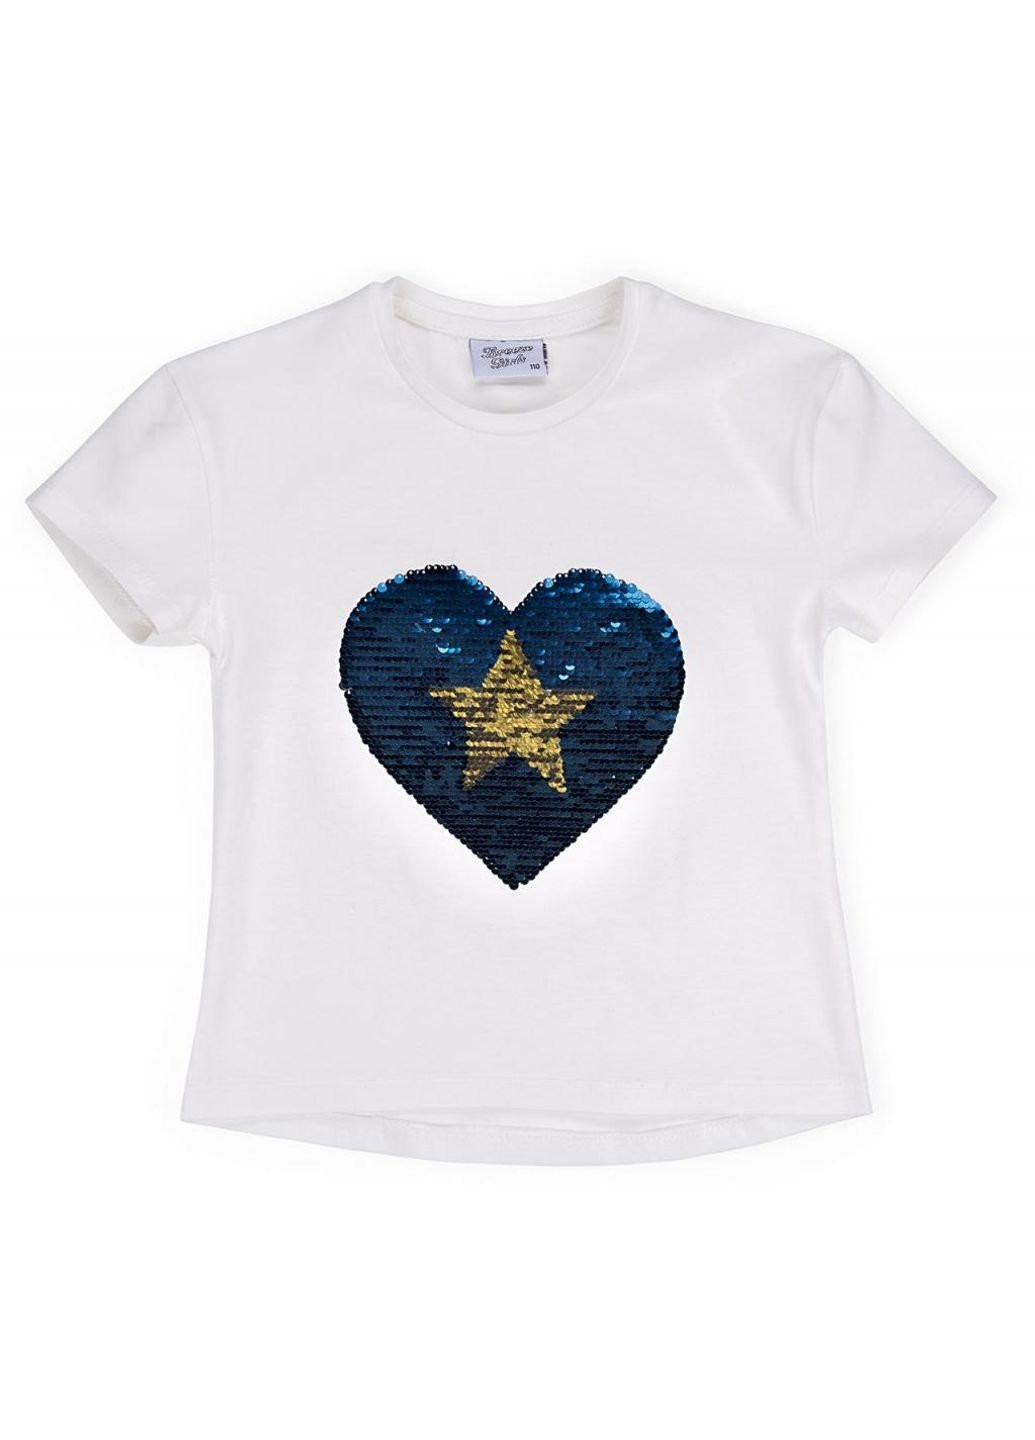 Синяя демисезонная футболка детская с сердцем перевертышем (9287-116g-blue) Breeze